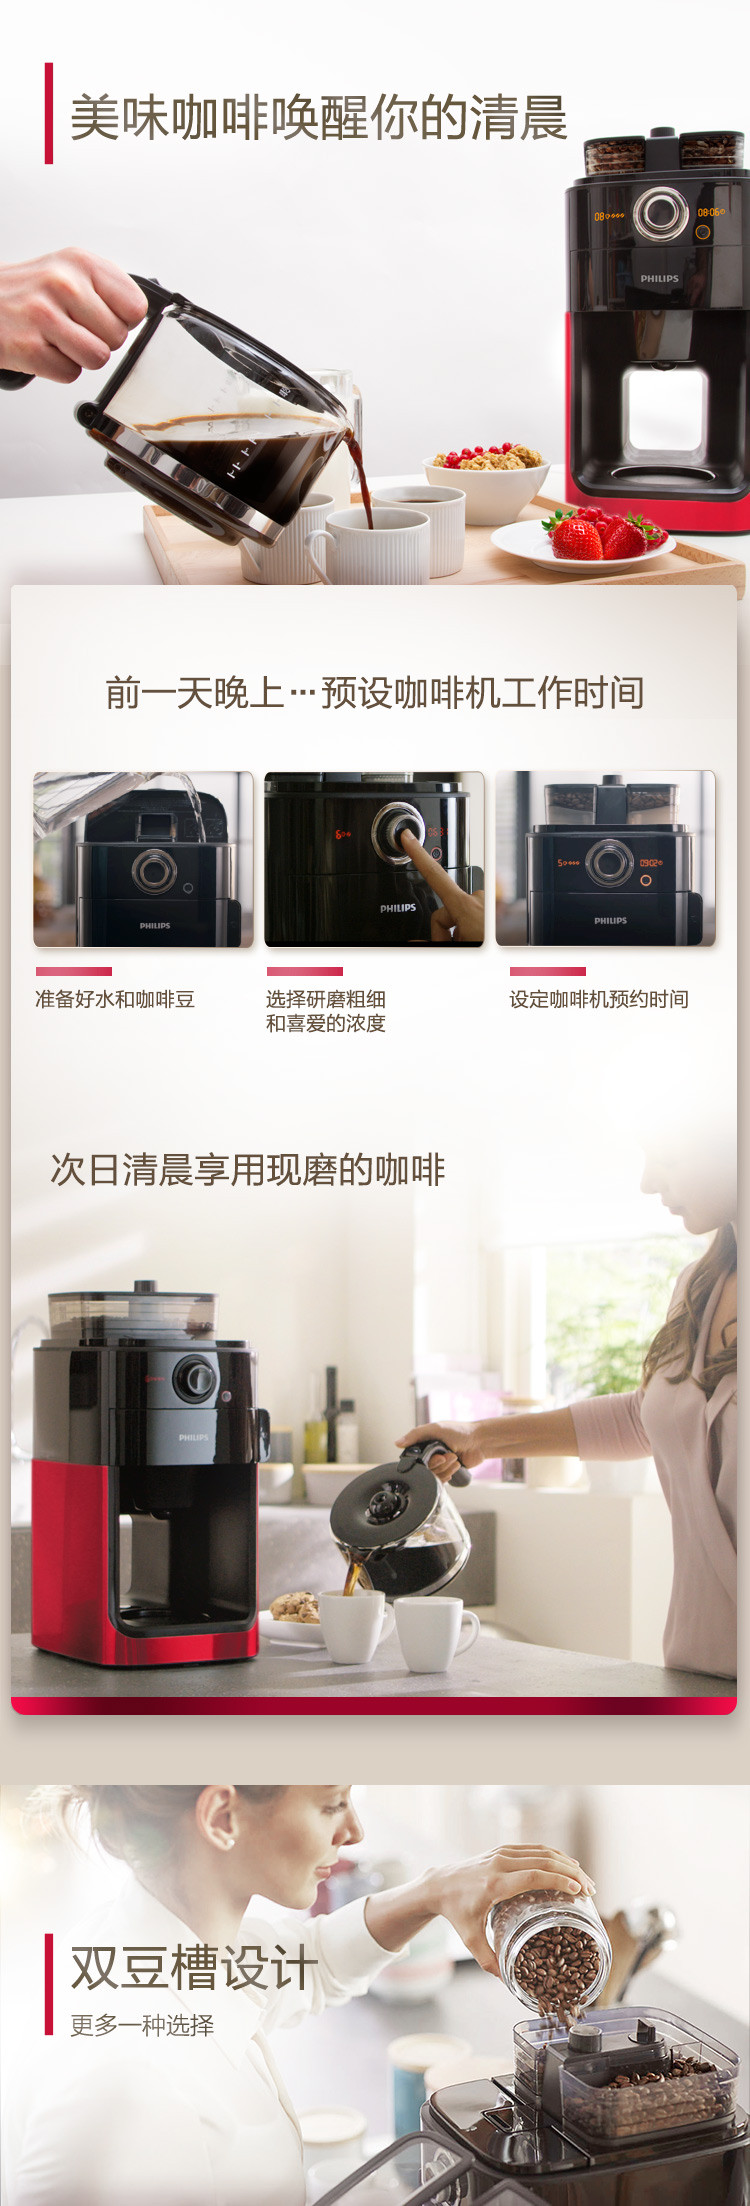 飞利浦/PHILIPS 咖啡机 家用全自动双豆槽自动磨豆功能咖啡壶 可预约定时 HD7762/50